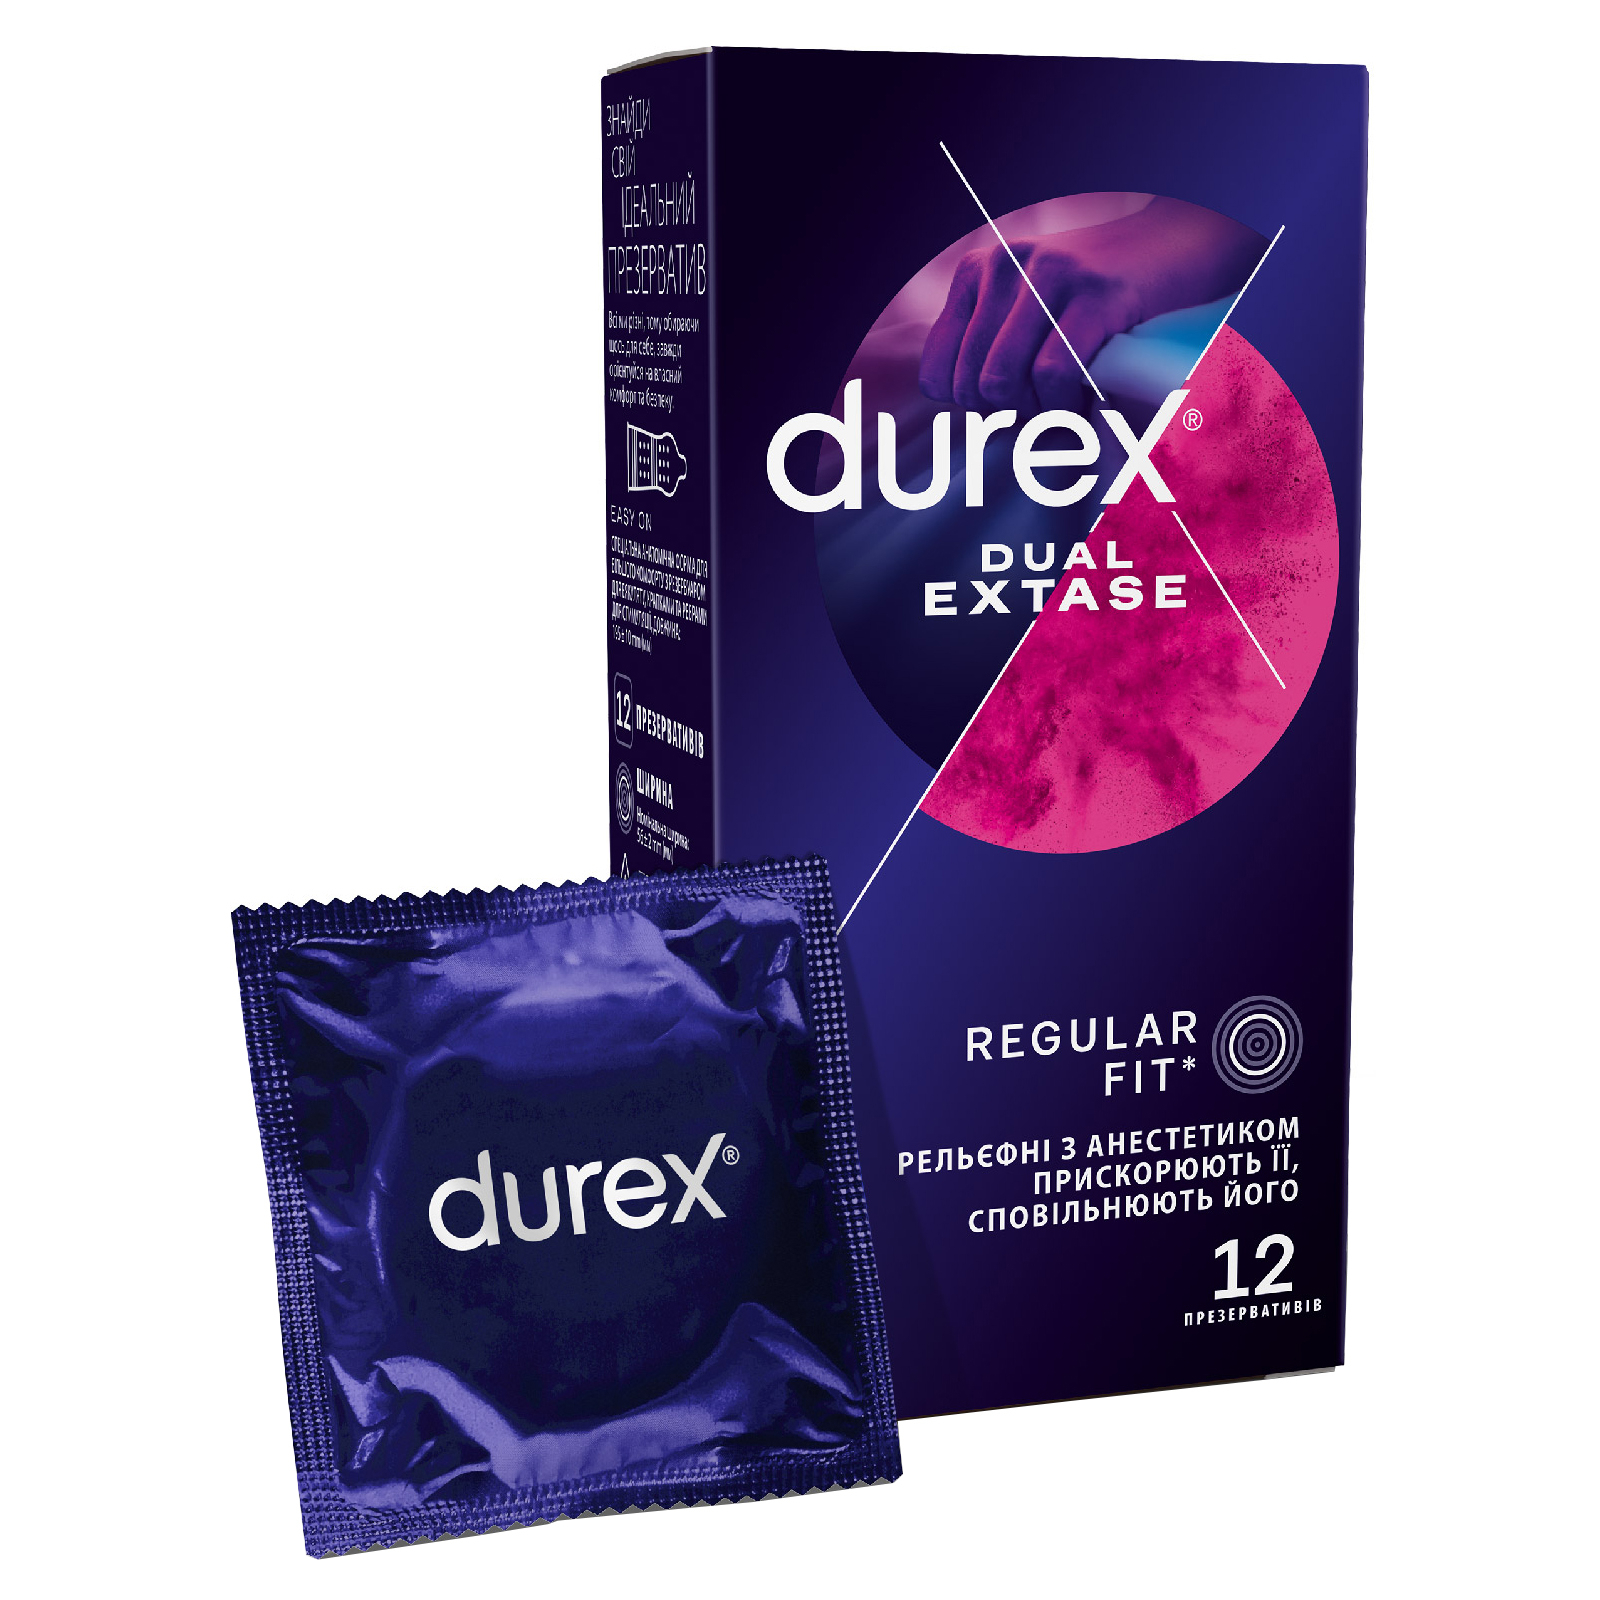 Презервативи Durex Dual Extase рельєфні з анестетиком 12 шт. (5052197053432)